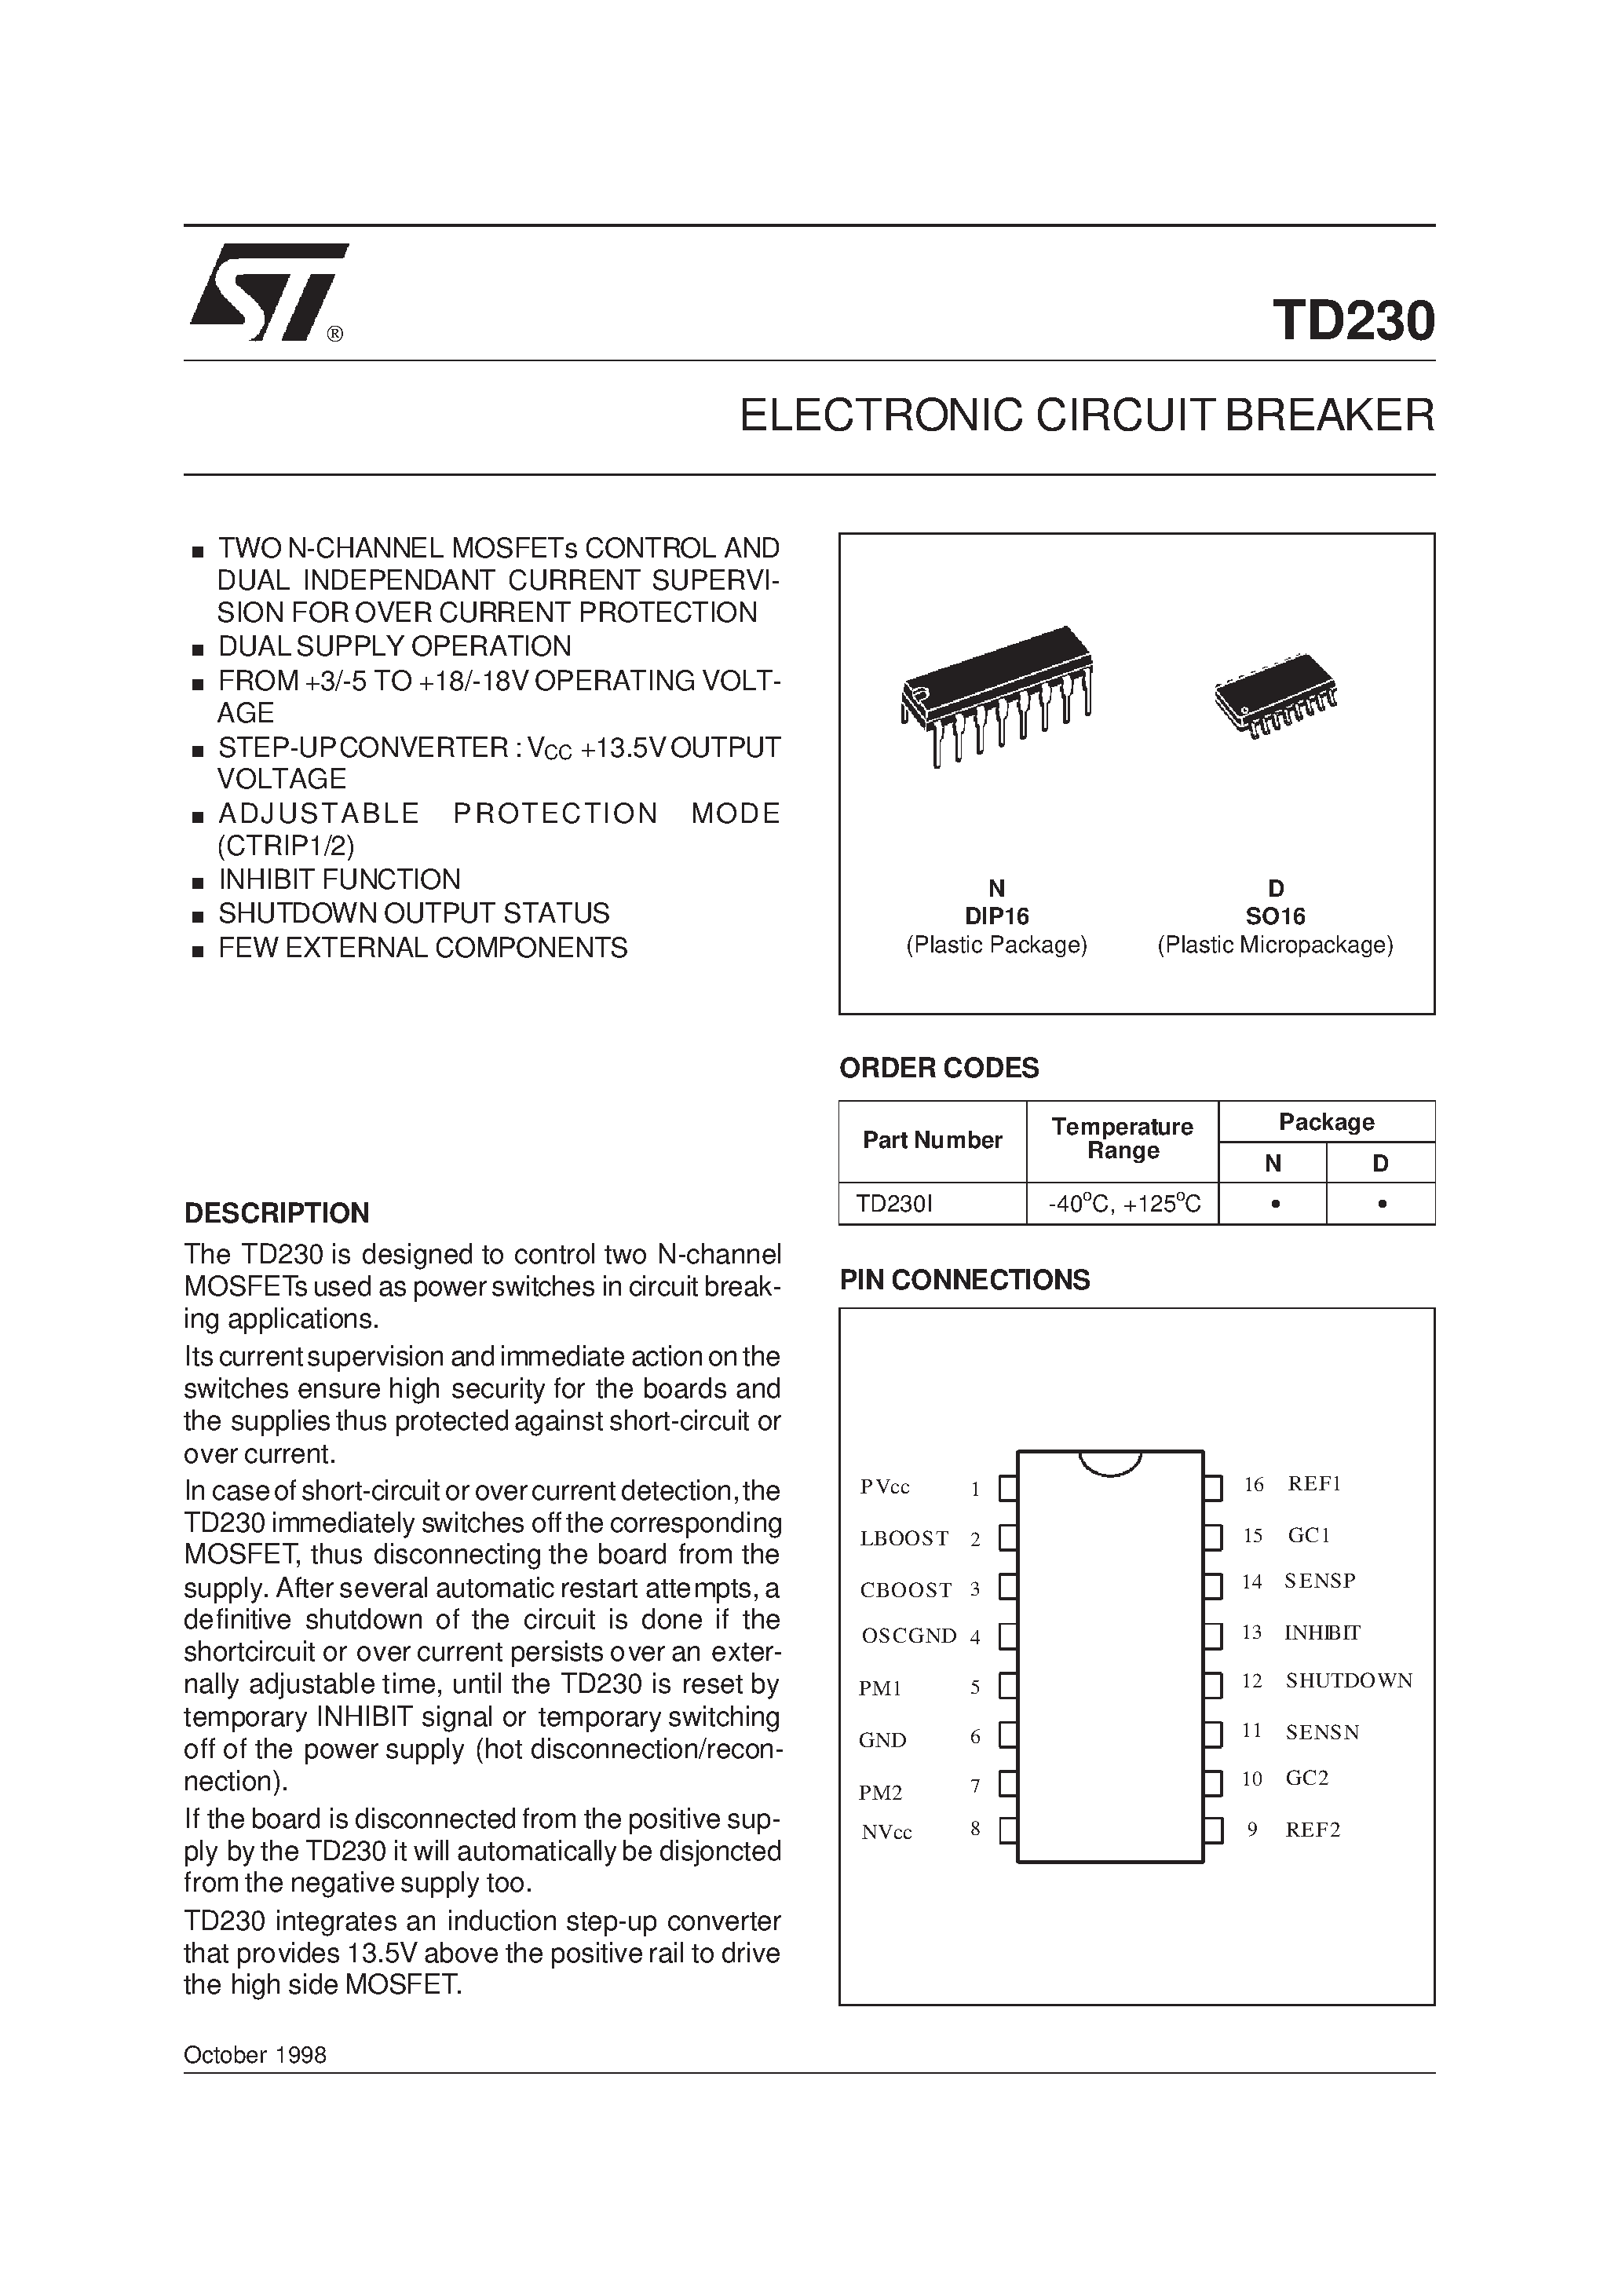 Даташит TD230N - ELECTRONIC CIRCUIT BREAKER страница 1